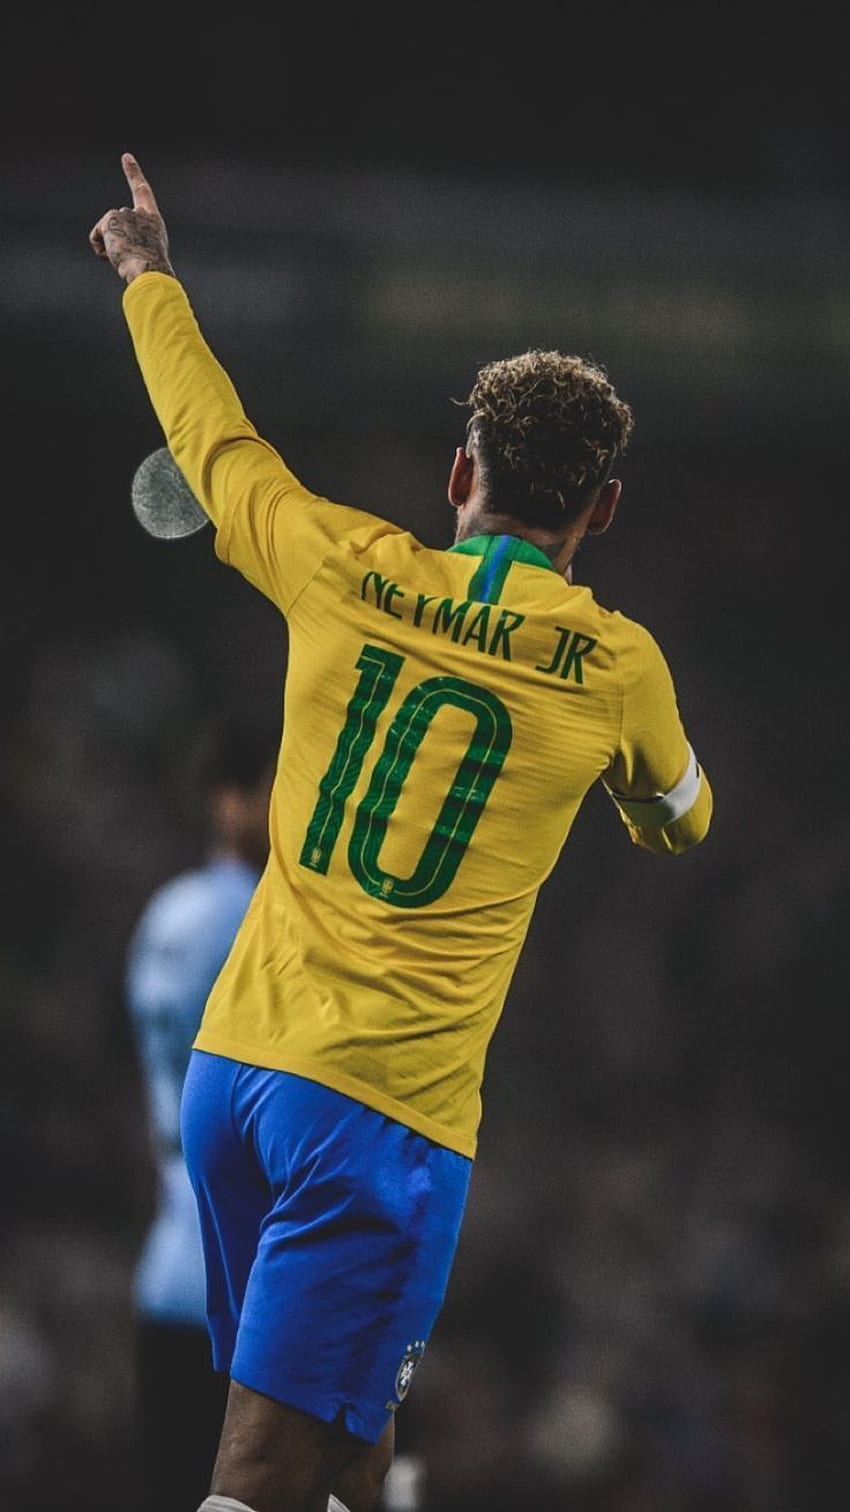 Neymar football: Sự khéo léo, tài năng và tốc độ của Neymar là những điều khiến người ta phải suýt nữa quên cả hơi thở. Xem ảnh Neymar chơi bóng đá để thấy được bóng đá là một môn thể thao mang đầy tính nghệ thuật và phong cách!